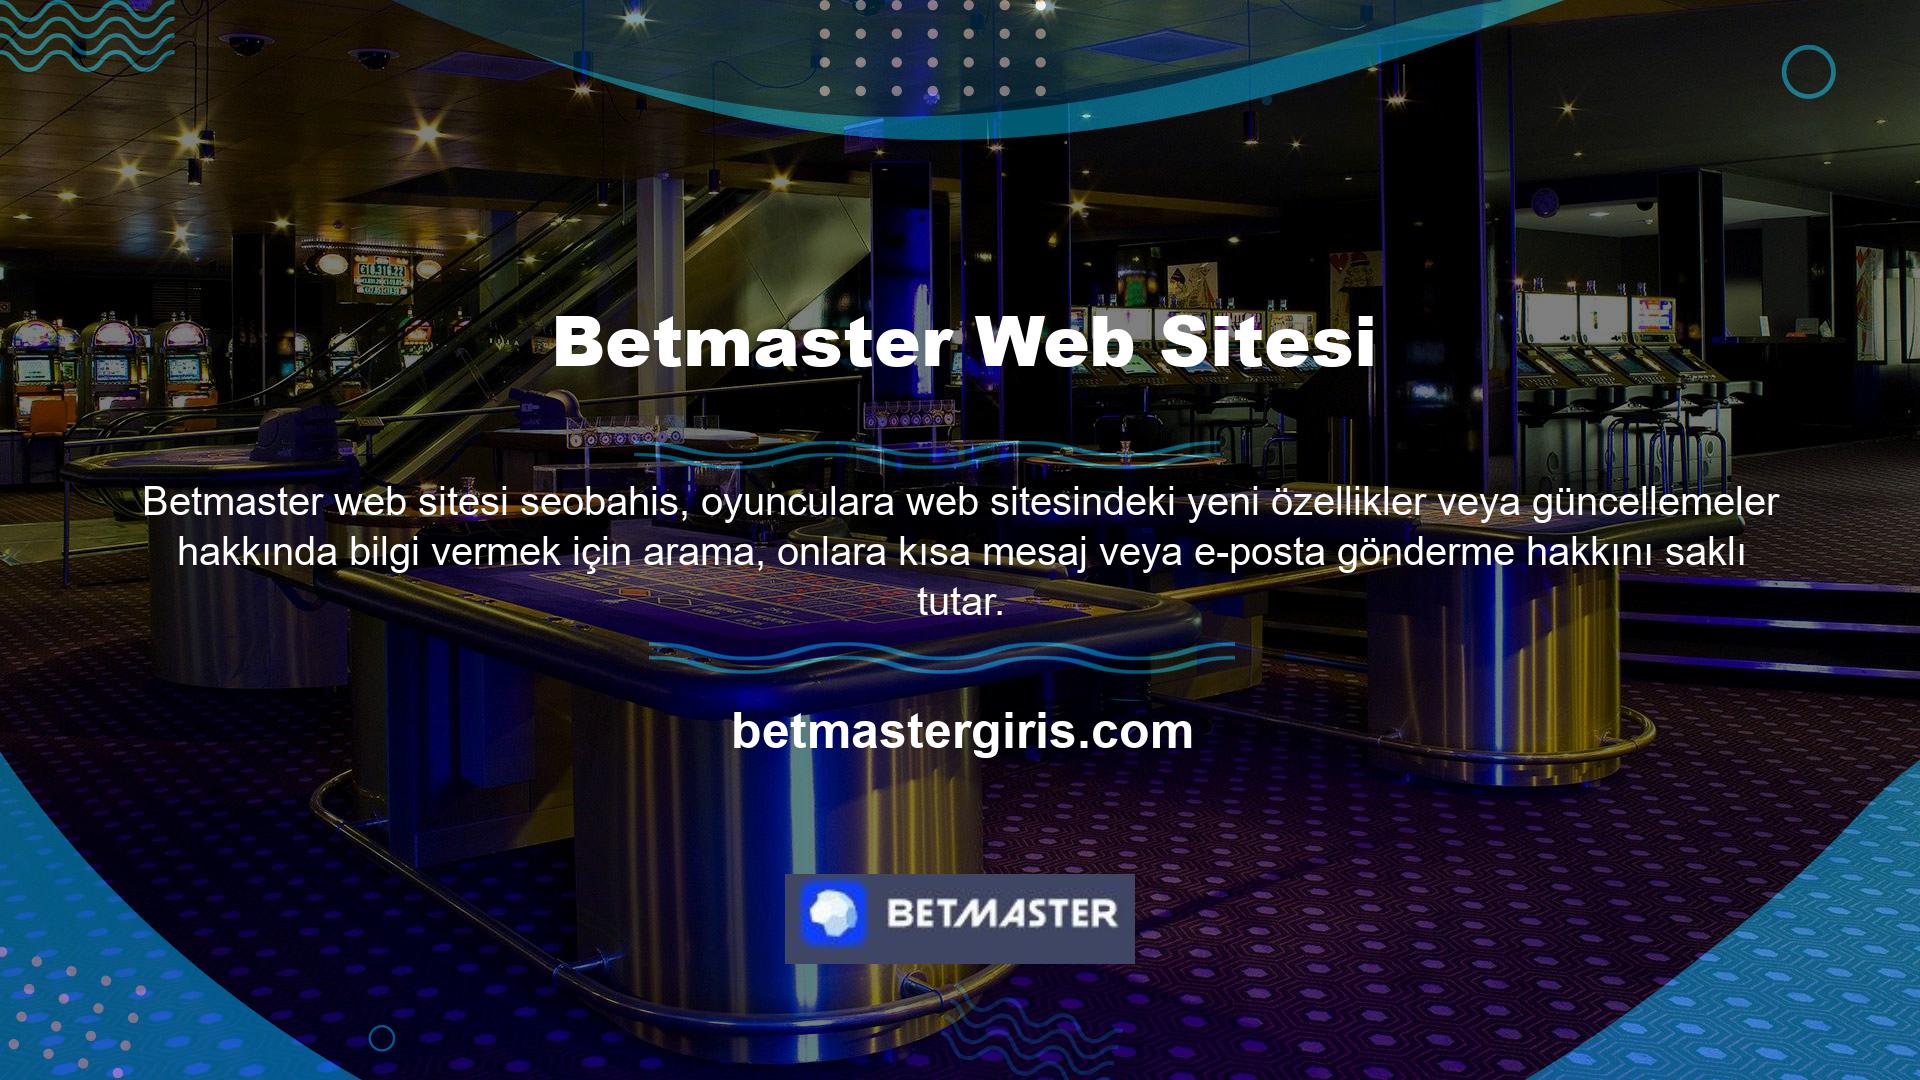 Mobil cihazlar ile siteye giriş yapan kullanıcıların cihazlarında oluşabilecek bilgi kayıplarından veya operatör tarafından tahsil edilen ücretlerden Betmaster internet sitesi sorumlu değildir